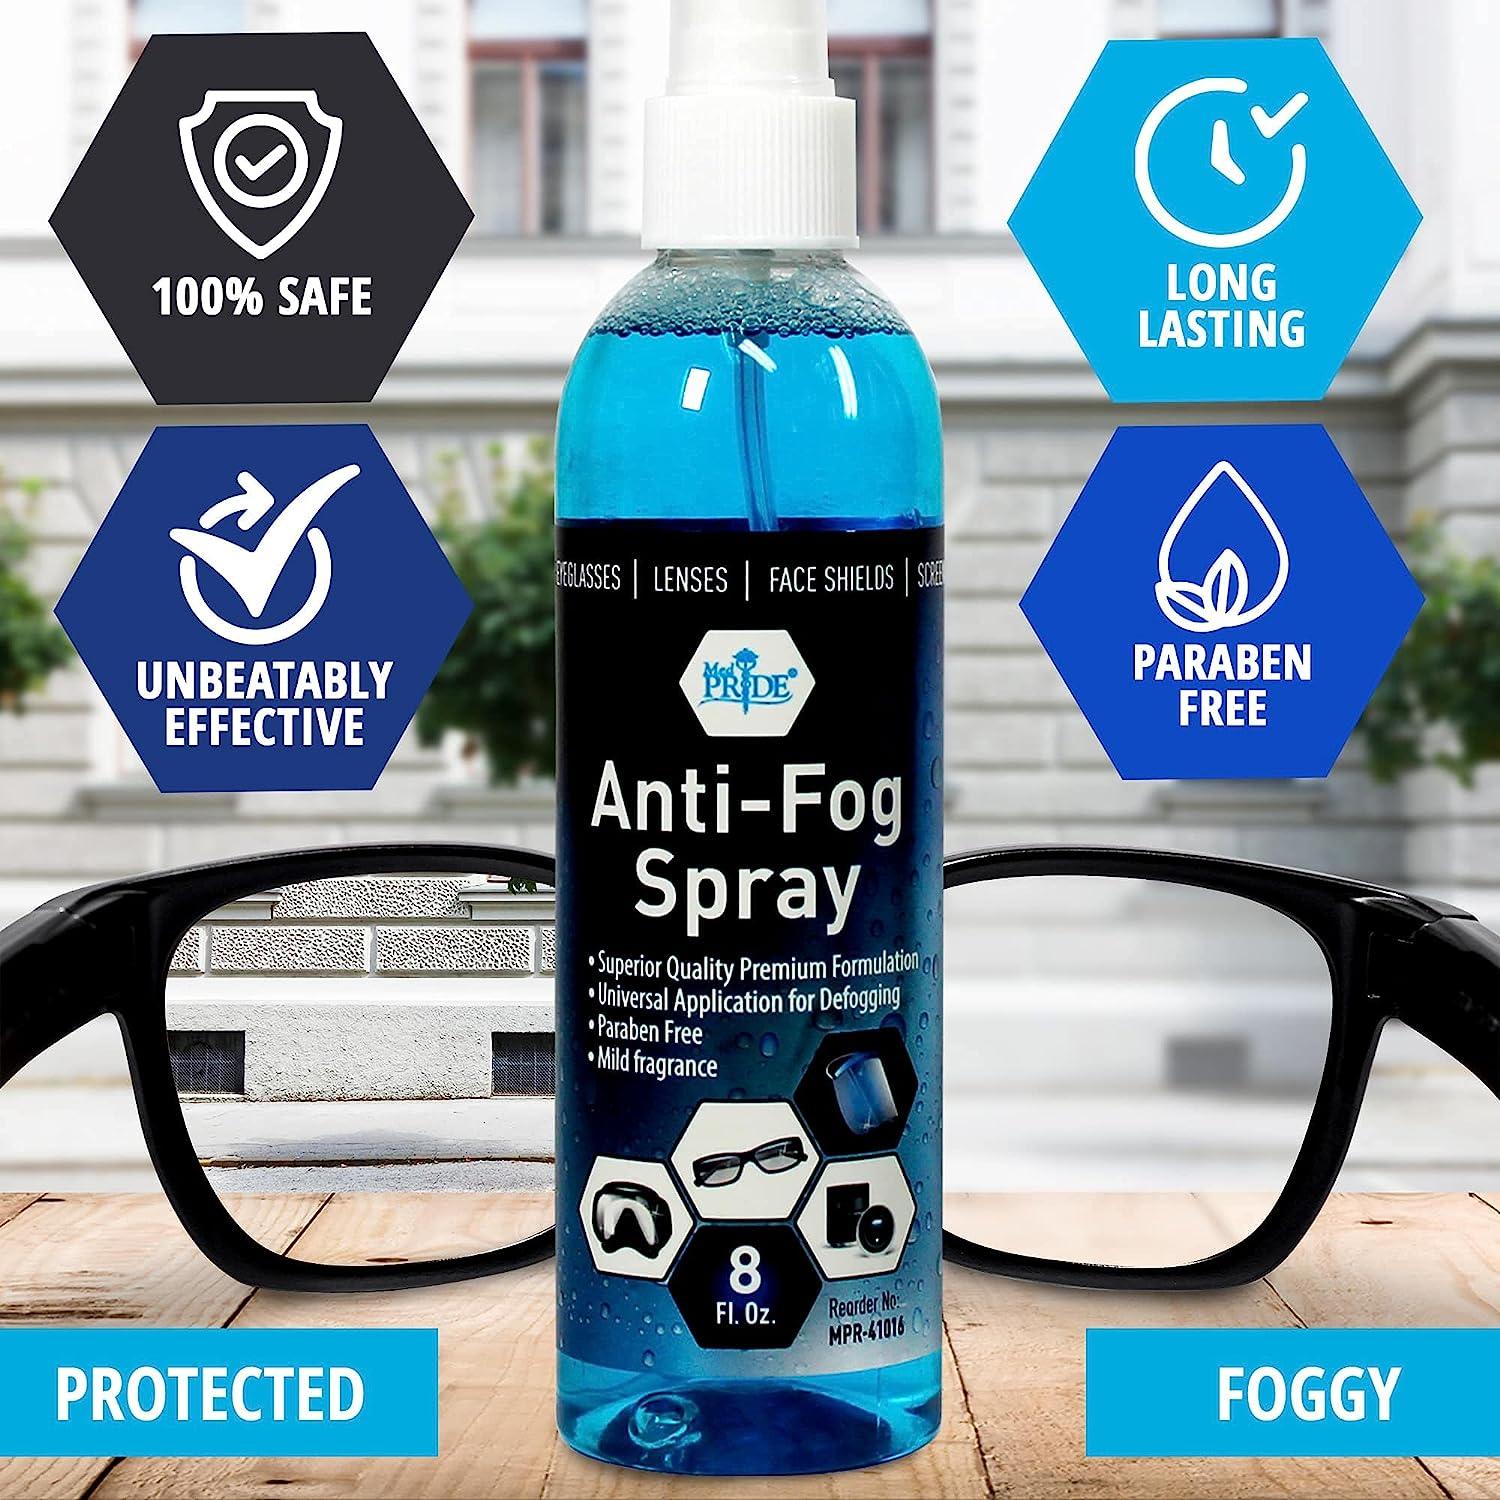 Anti-Fog Spray